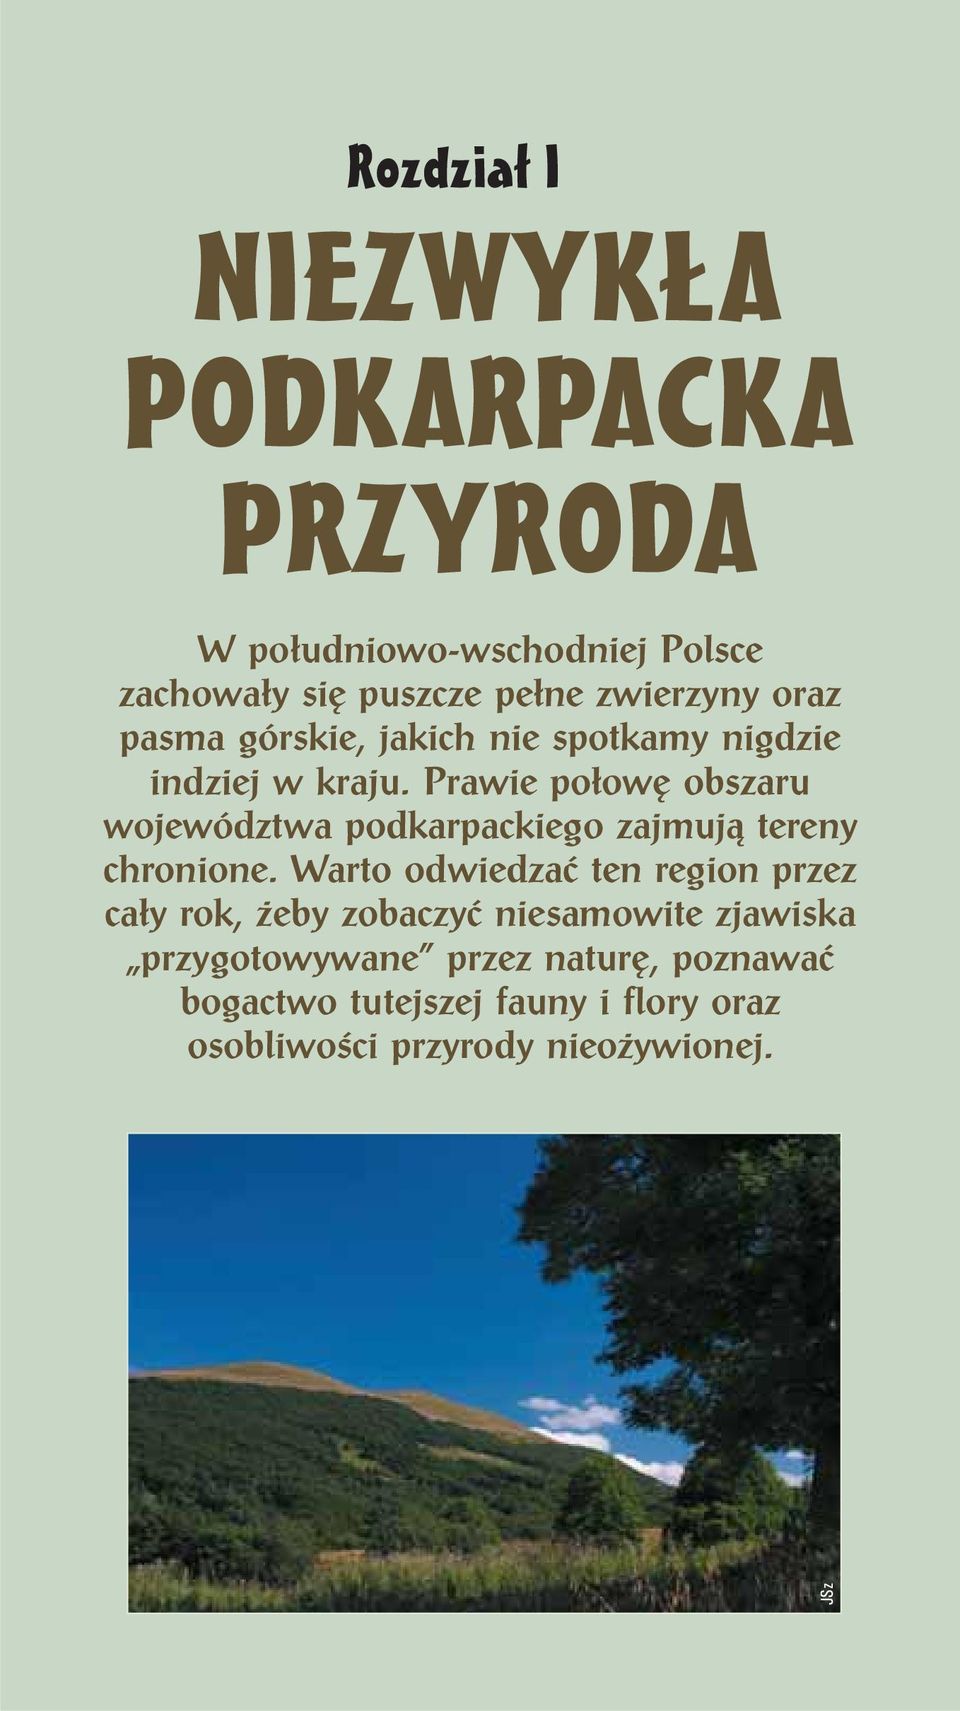 Prawie połowę obszaru województwa podkarpackiego zajmują tereny chronione.